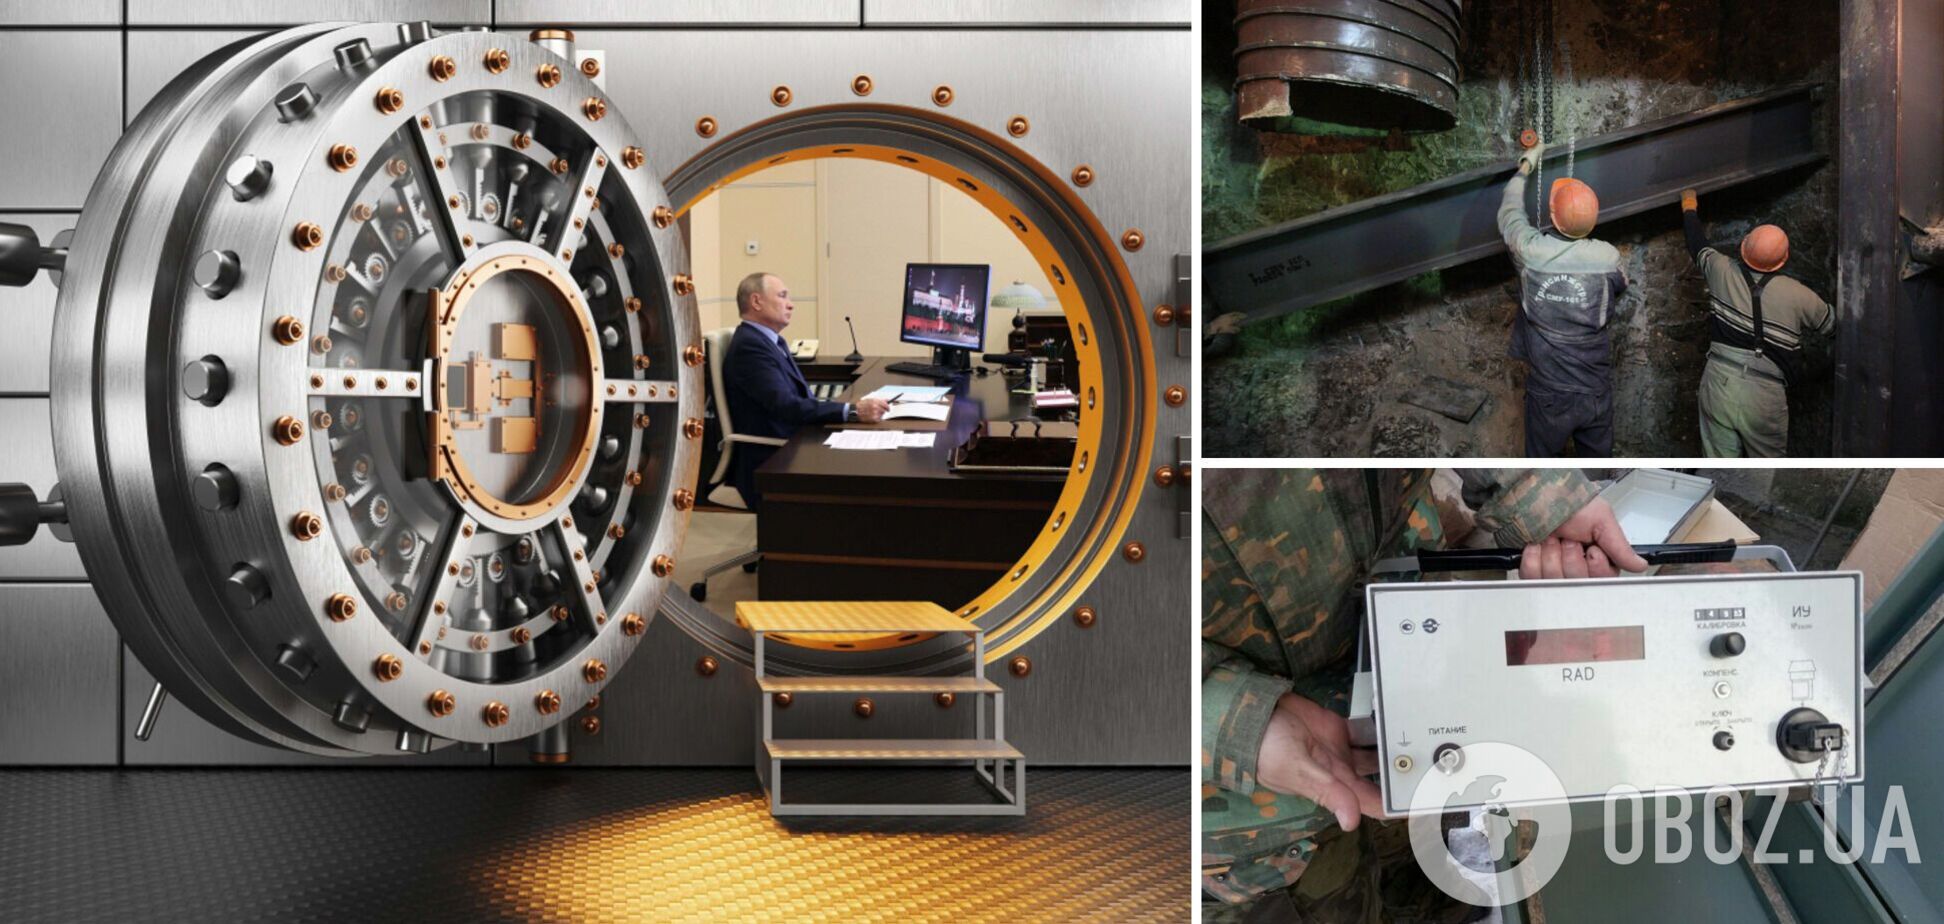 Мережа бункерів на глибині 200 м і захист від радіації: як влаштоване 'путінське метро' під Москвою. Фото і відео